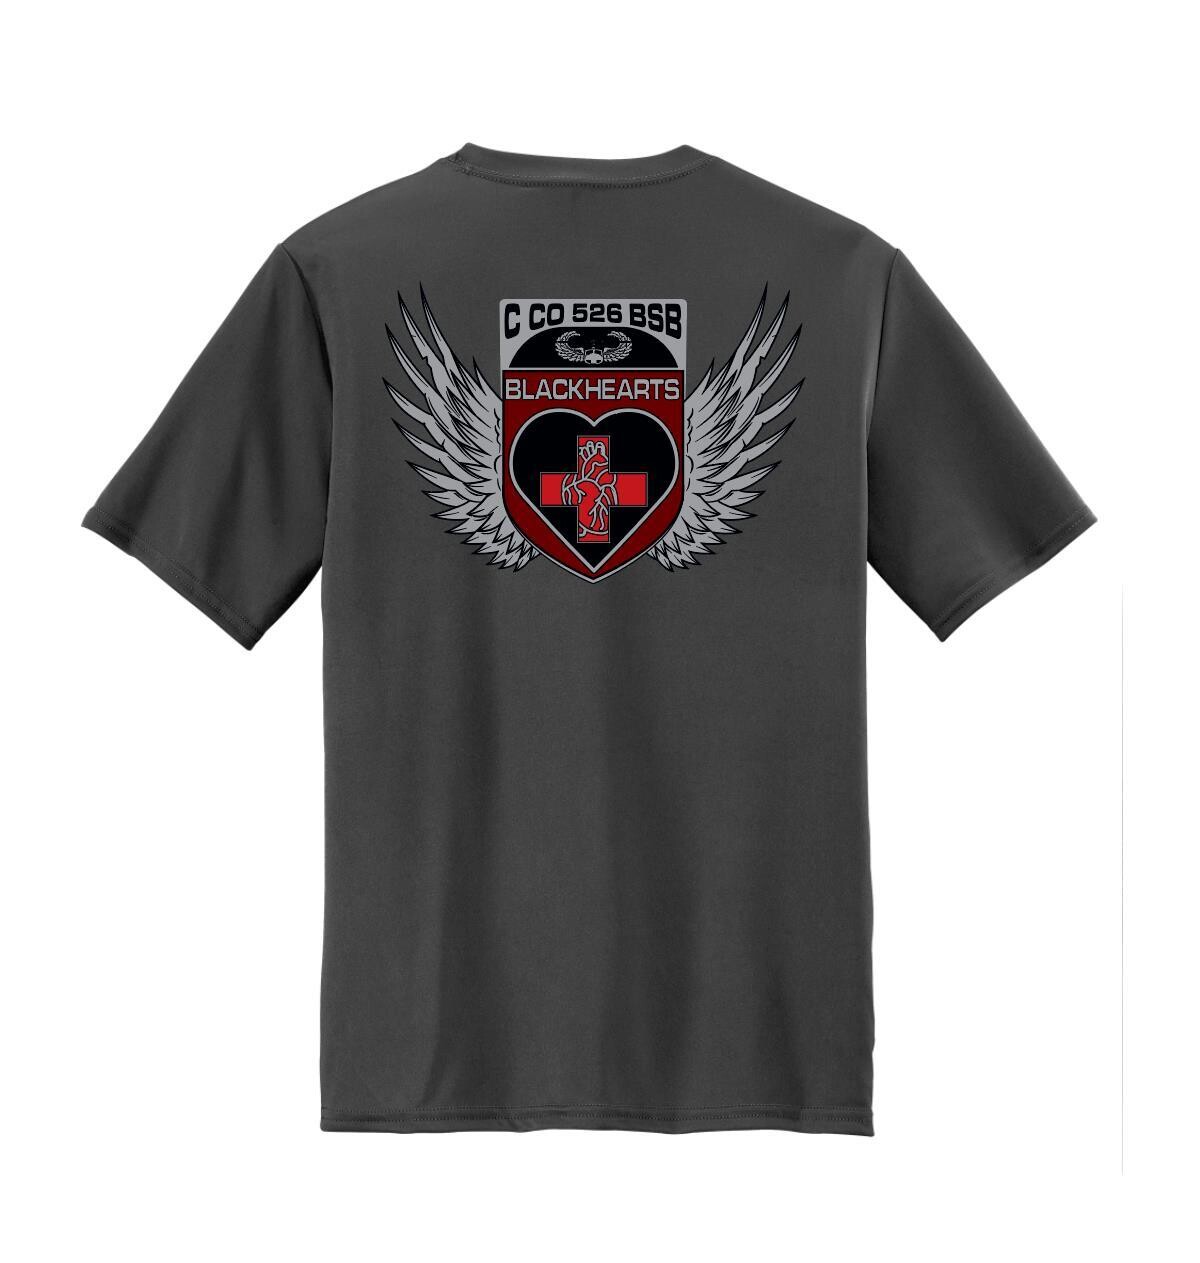 C Co 526 BSB "Blackhearts" PT Shirt